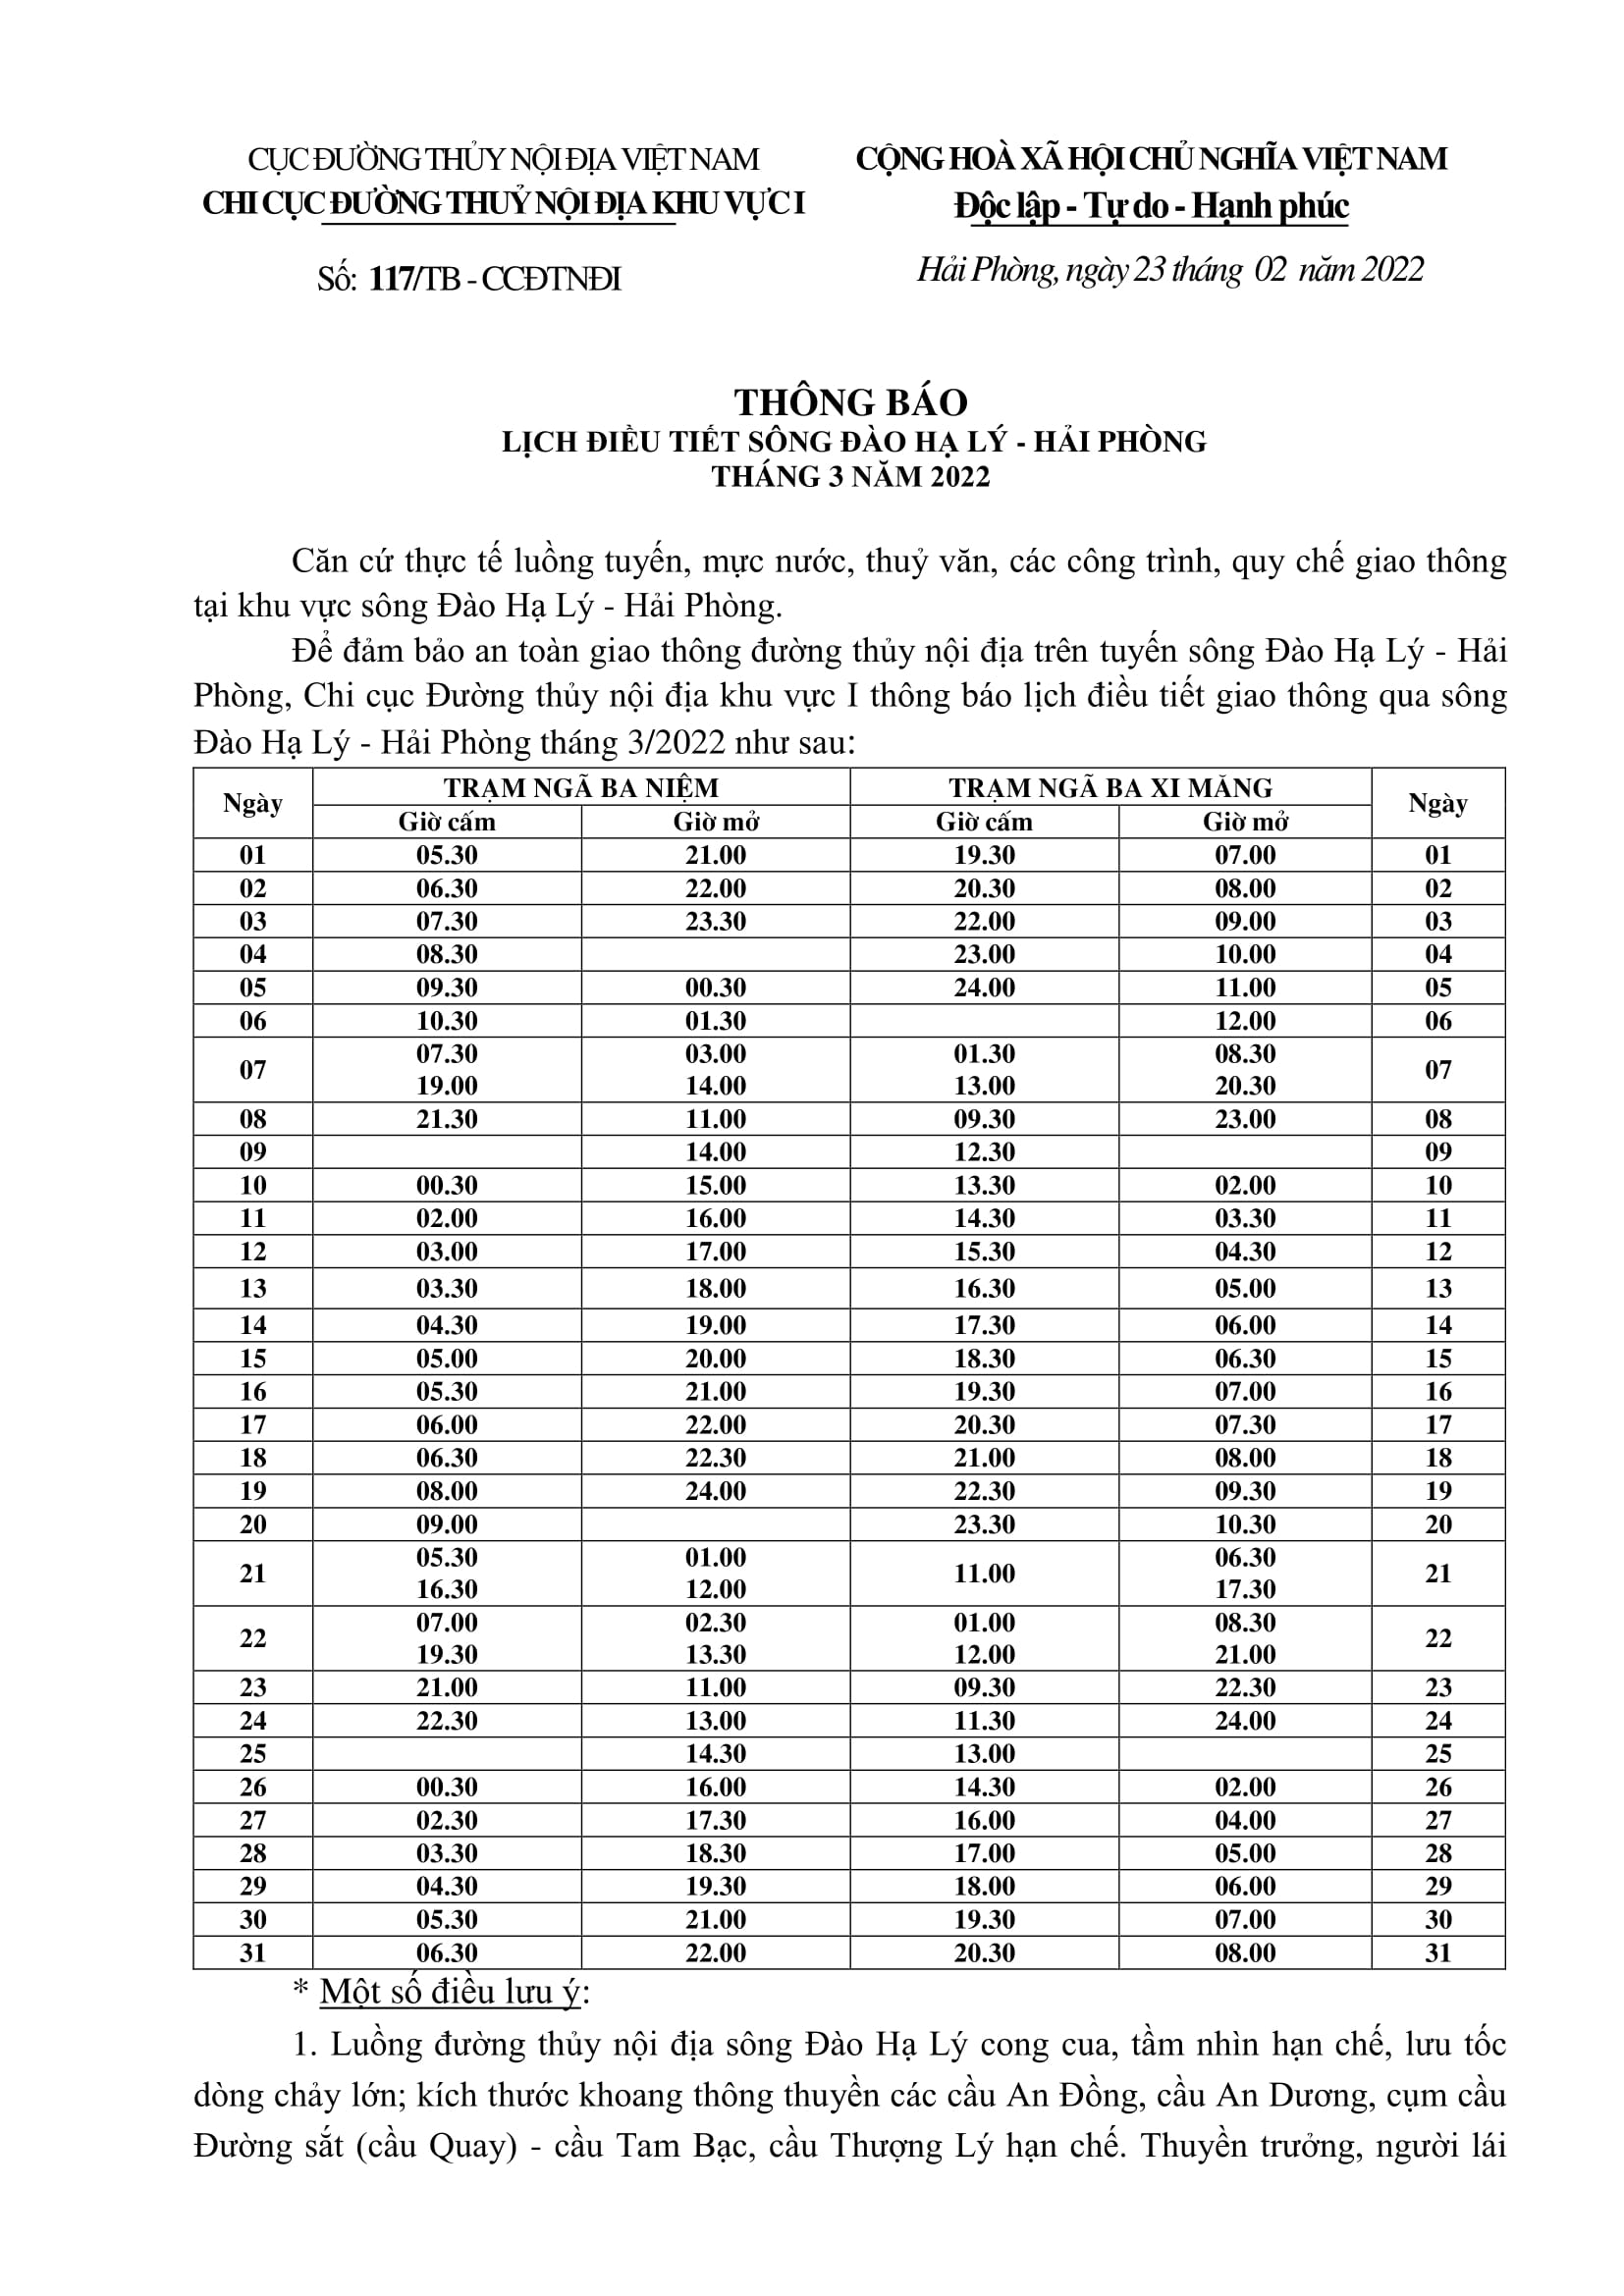 Thông báo điều chỉnh lịch điều tiết sông Đào Hạ Lý - TP Hải Phòng tháng 03/2022